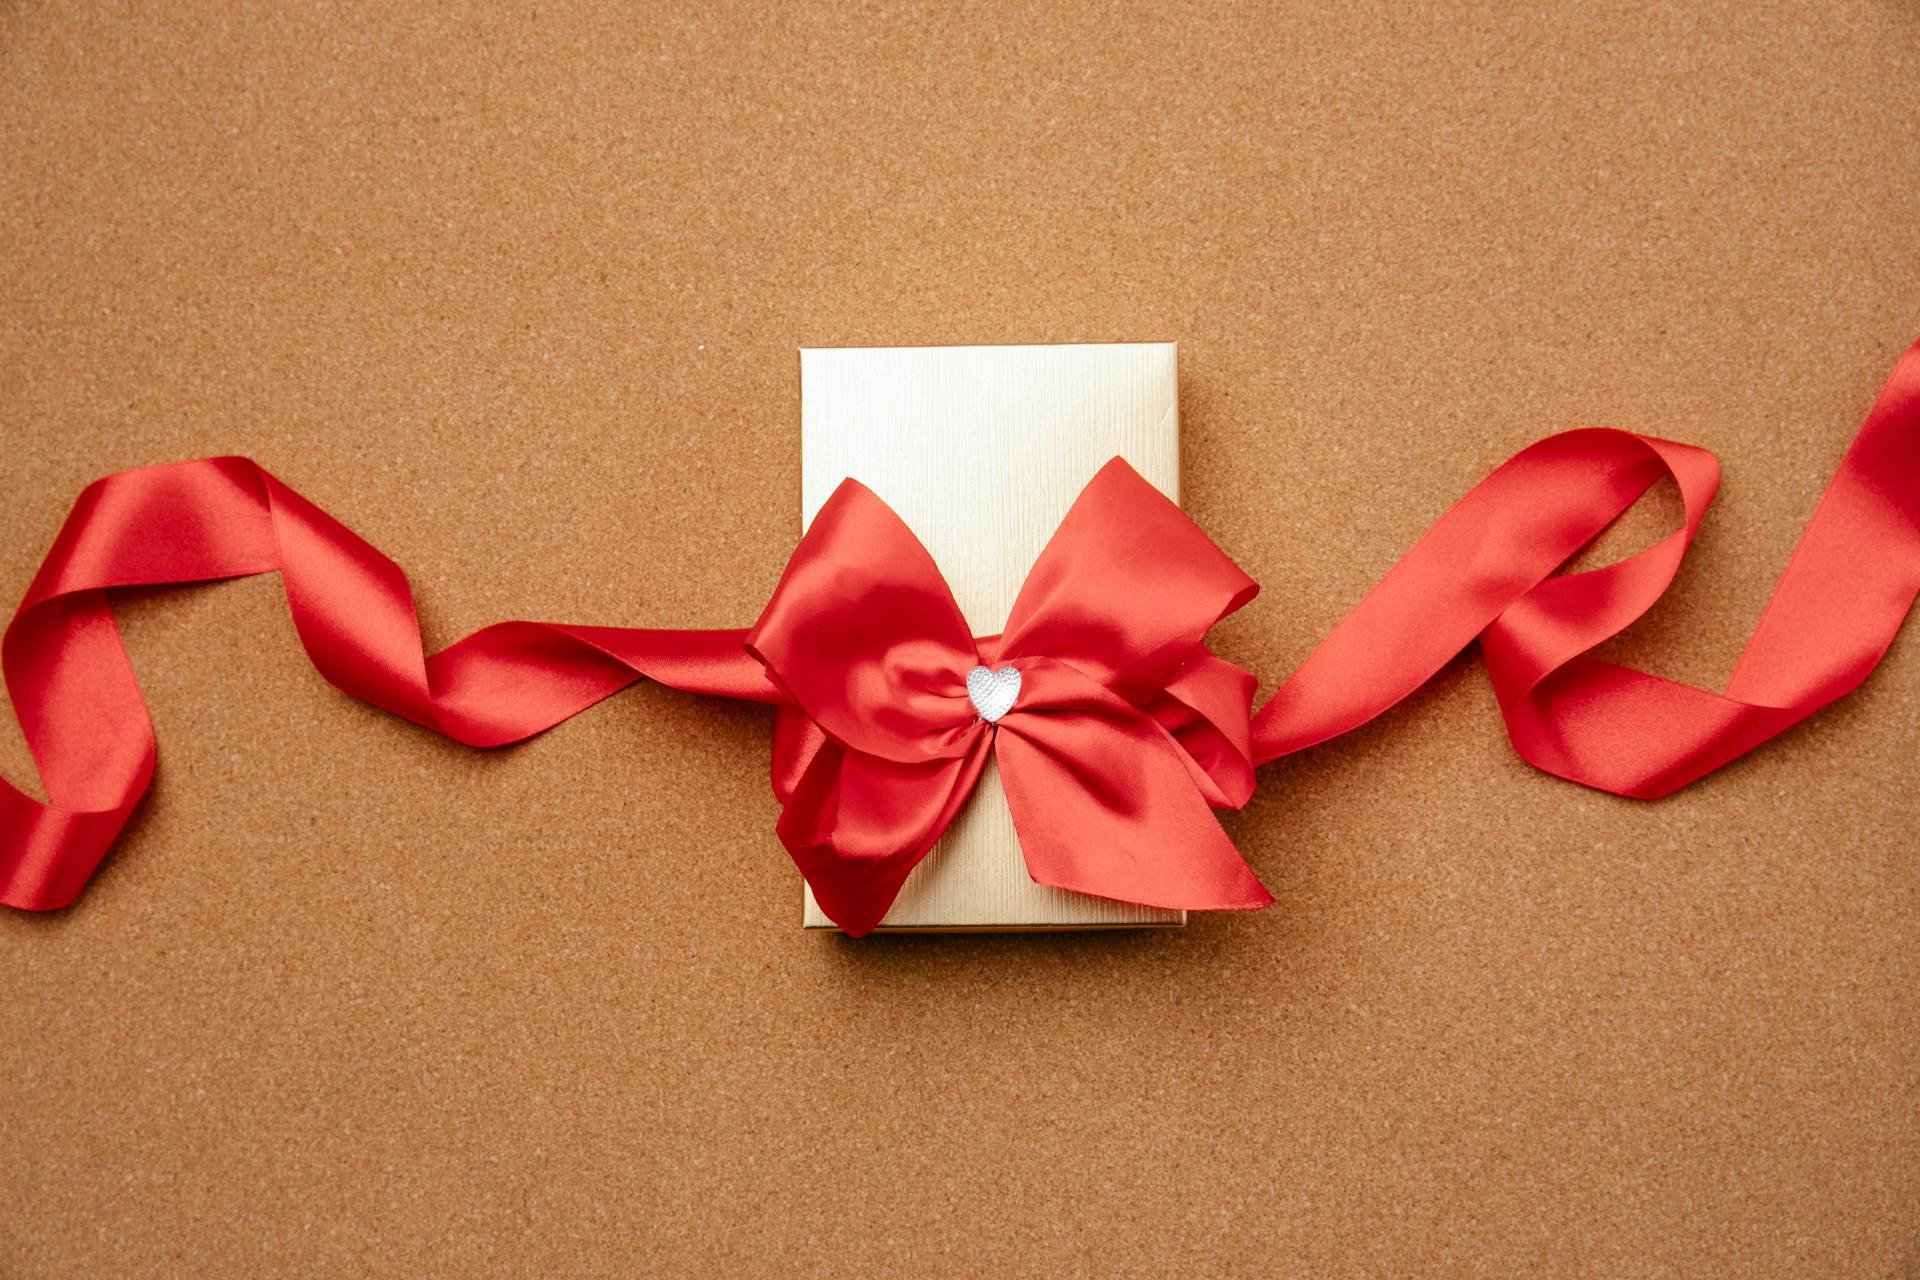 Eine kleine Geschenkschachtel, verziert mit einer roten Schleife | Quelle: Pexels